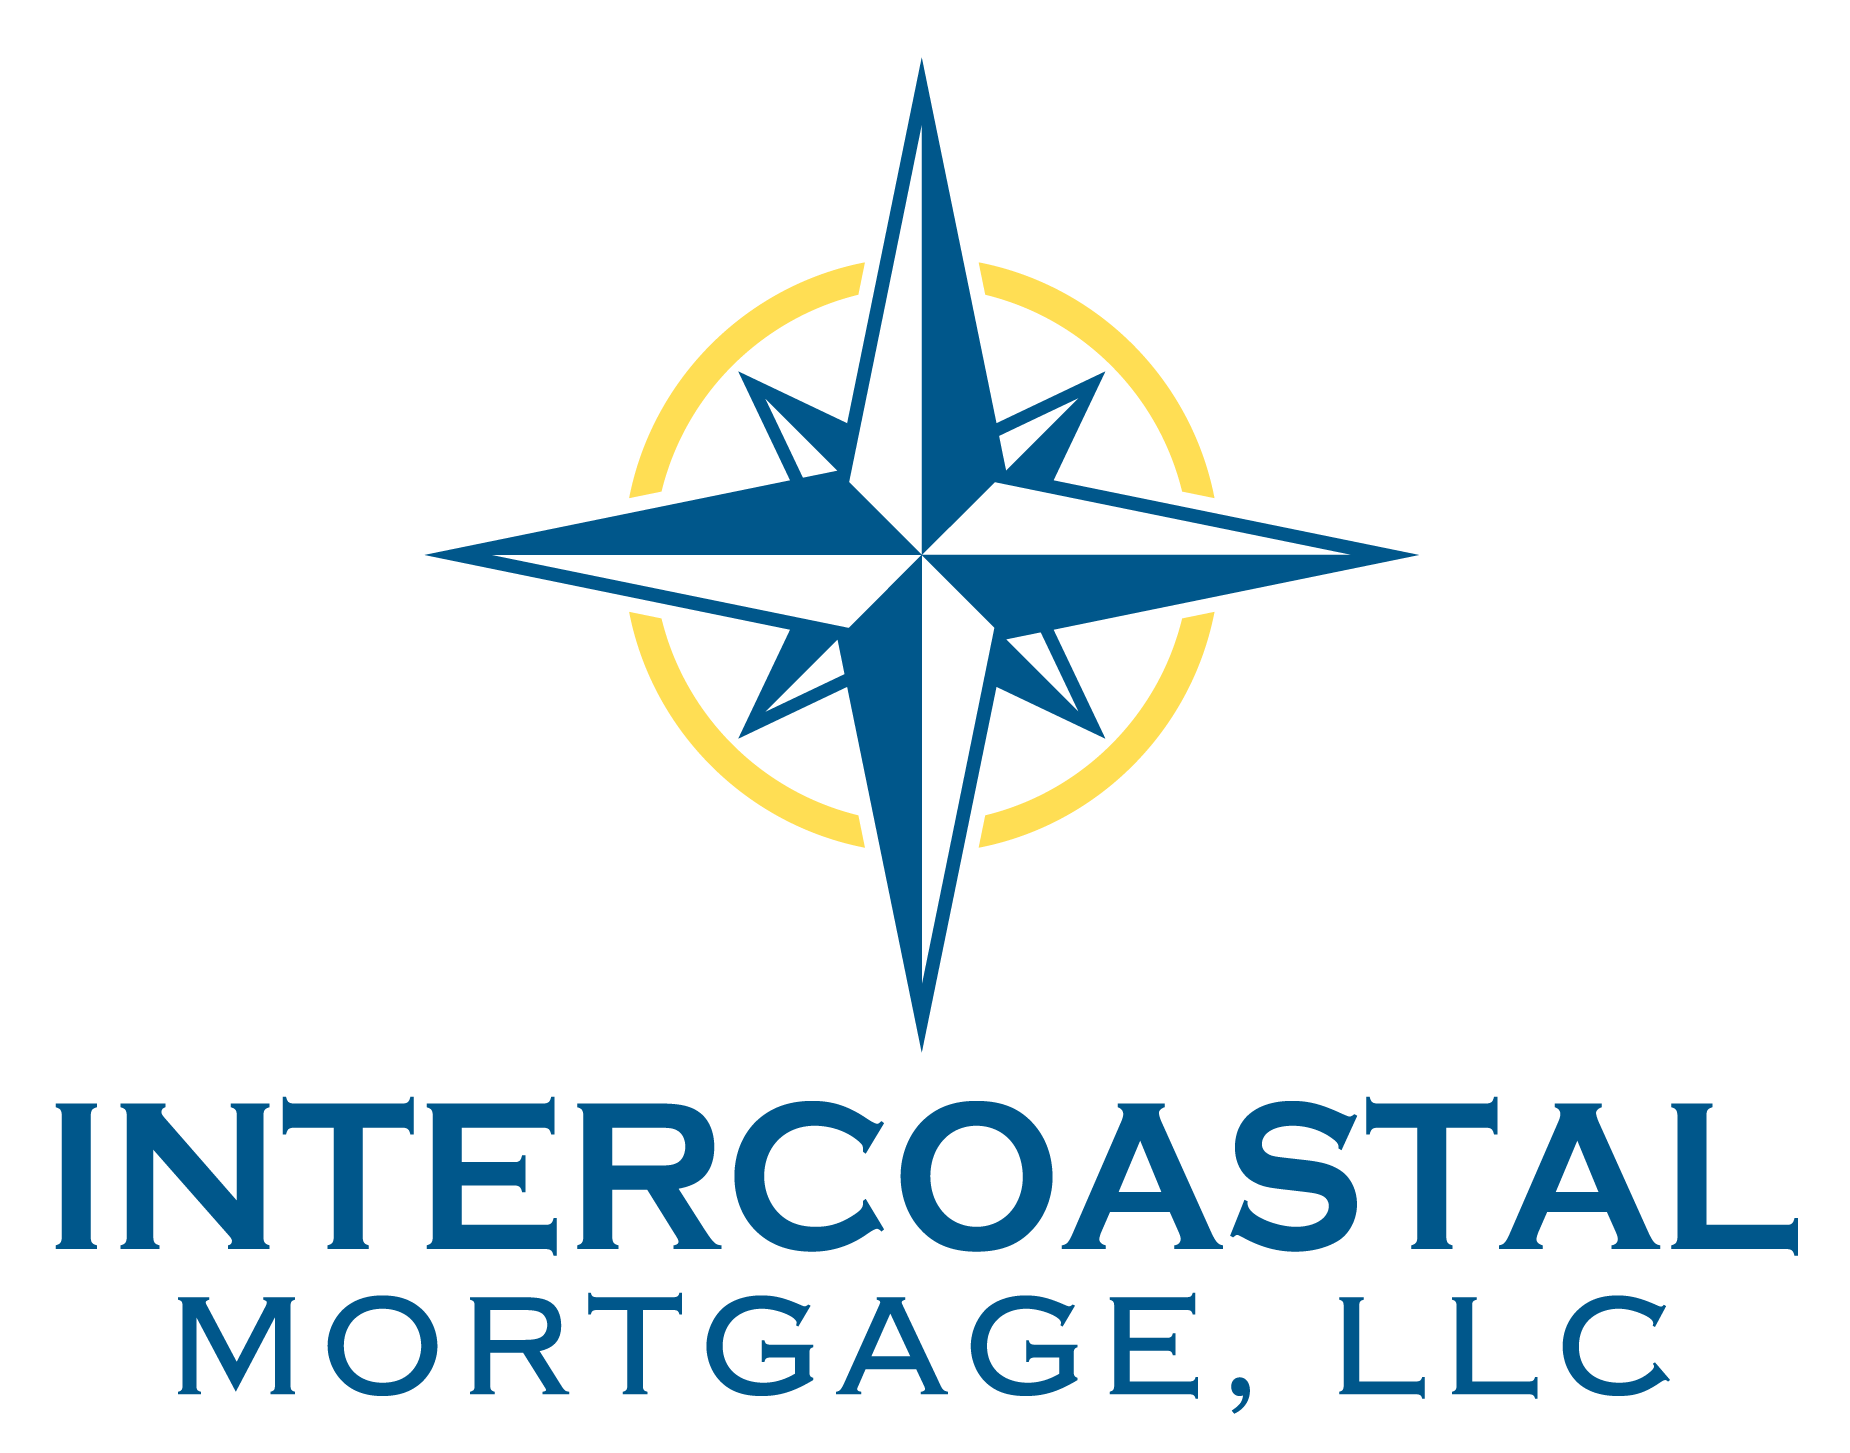 Intercoastal Mortgage, LLC logo